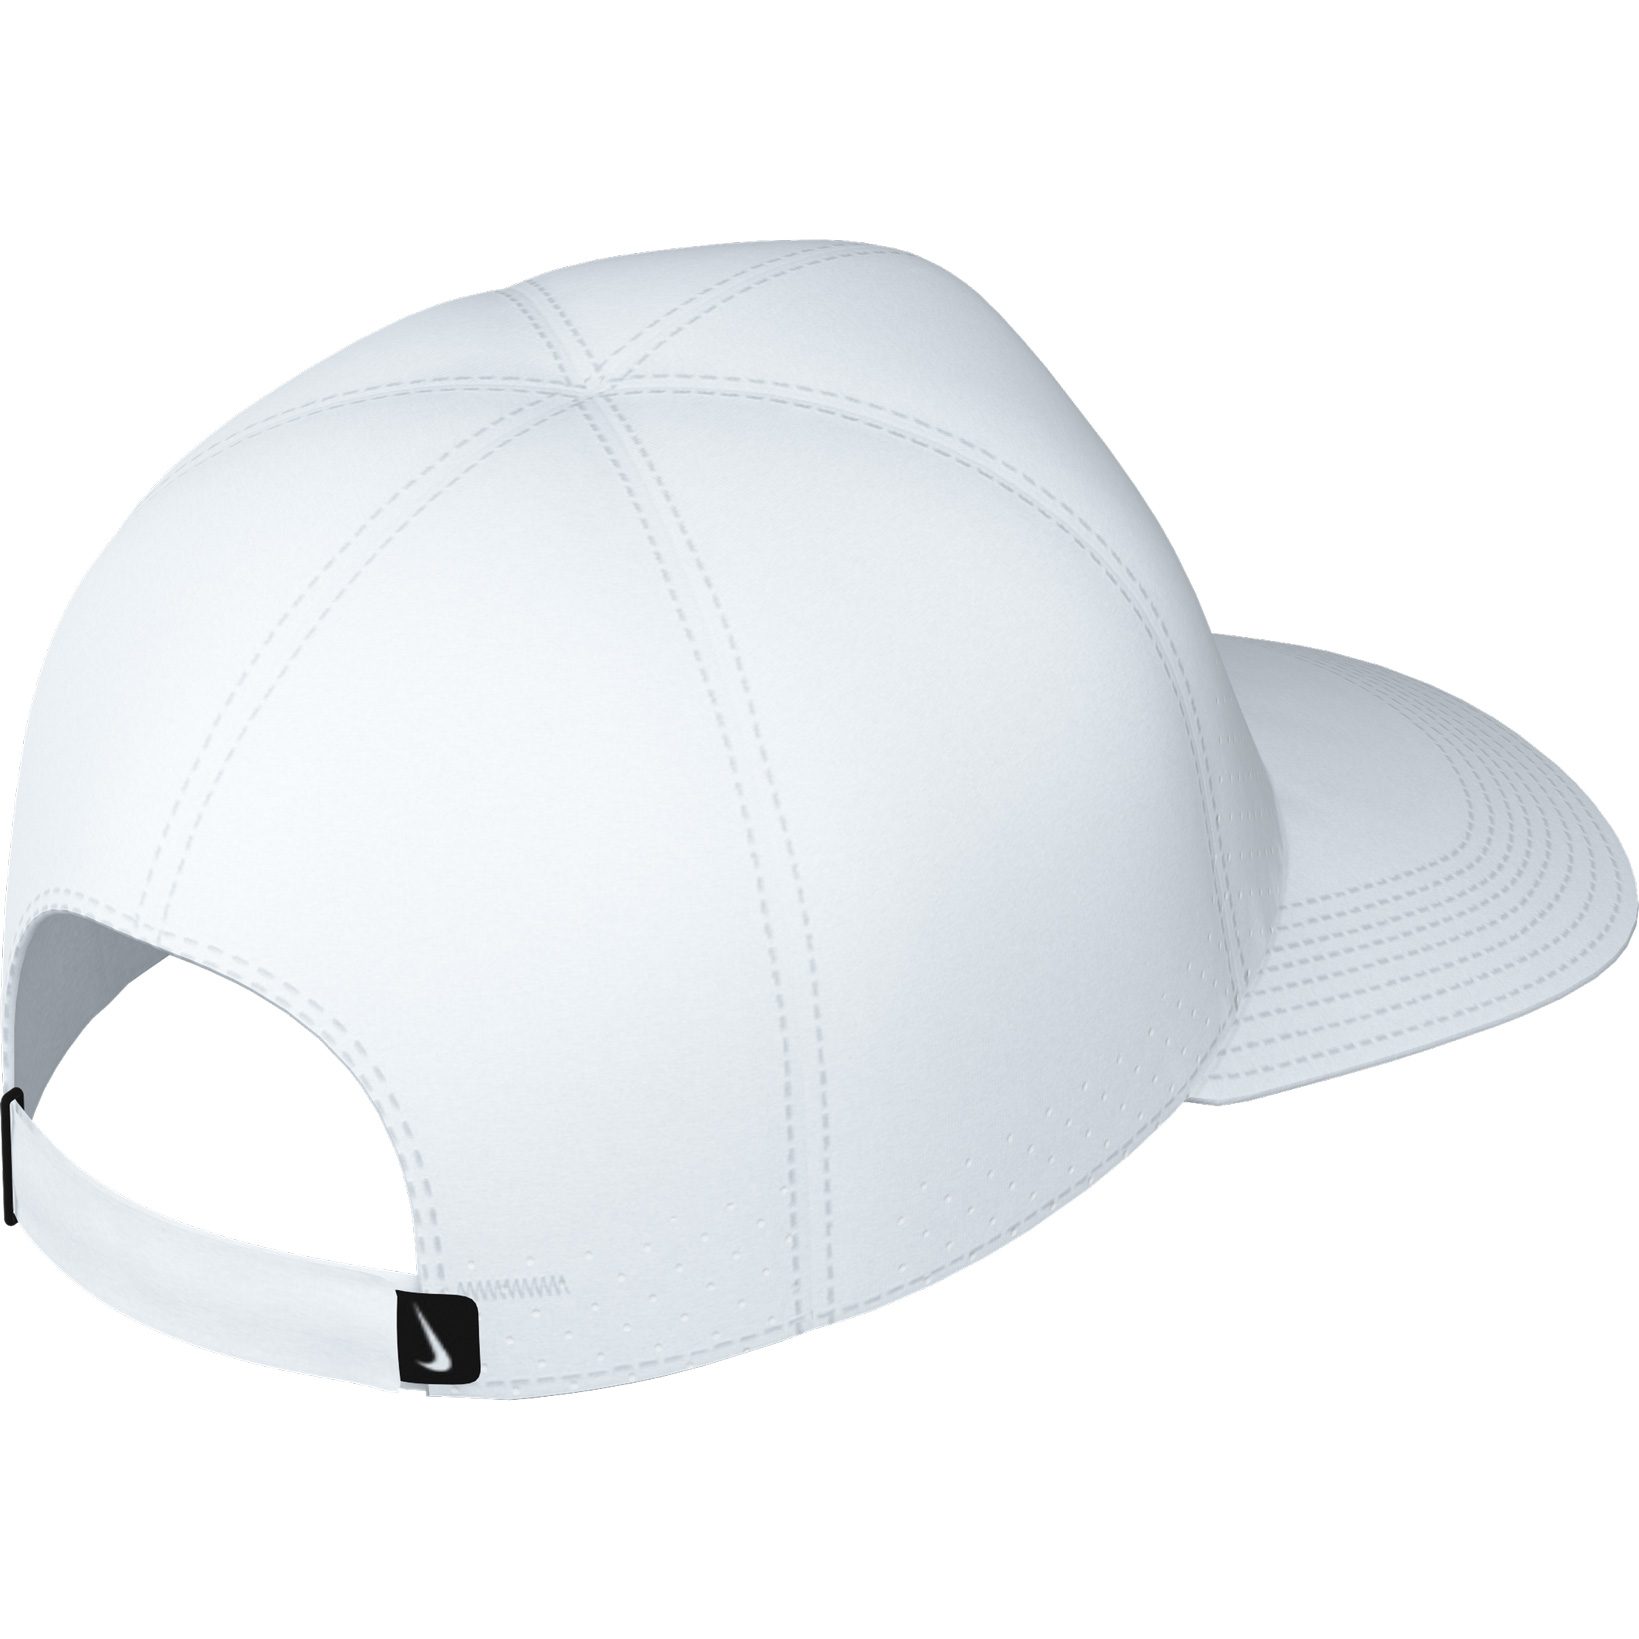 Nike - Dri-Fit ADV Club Unstructured Tennis Cap white